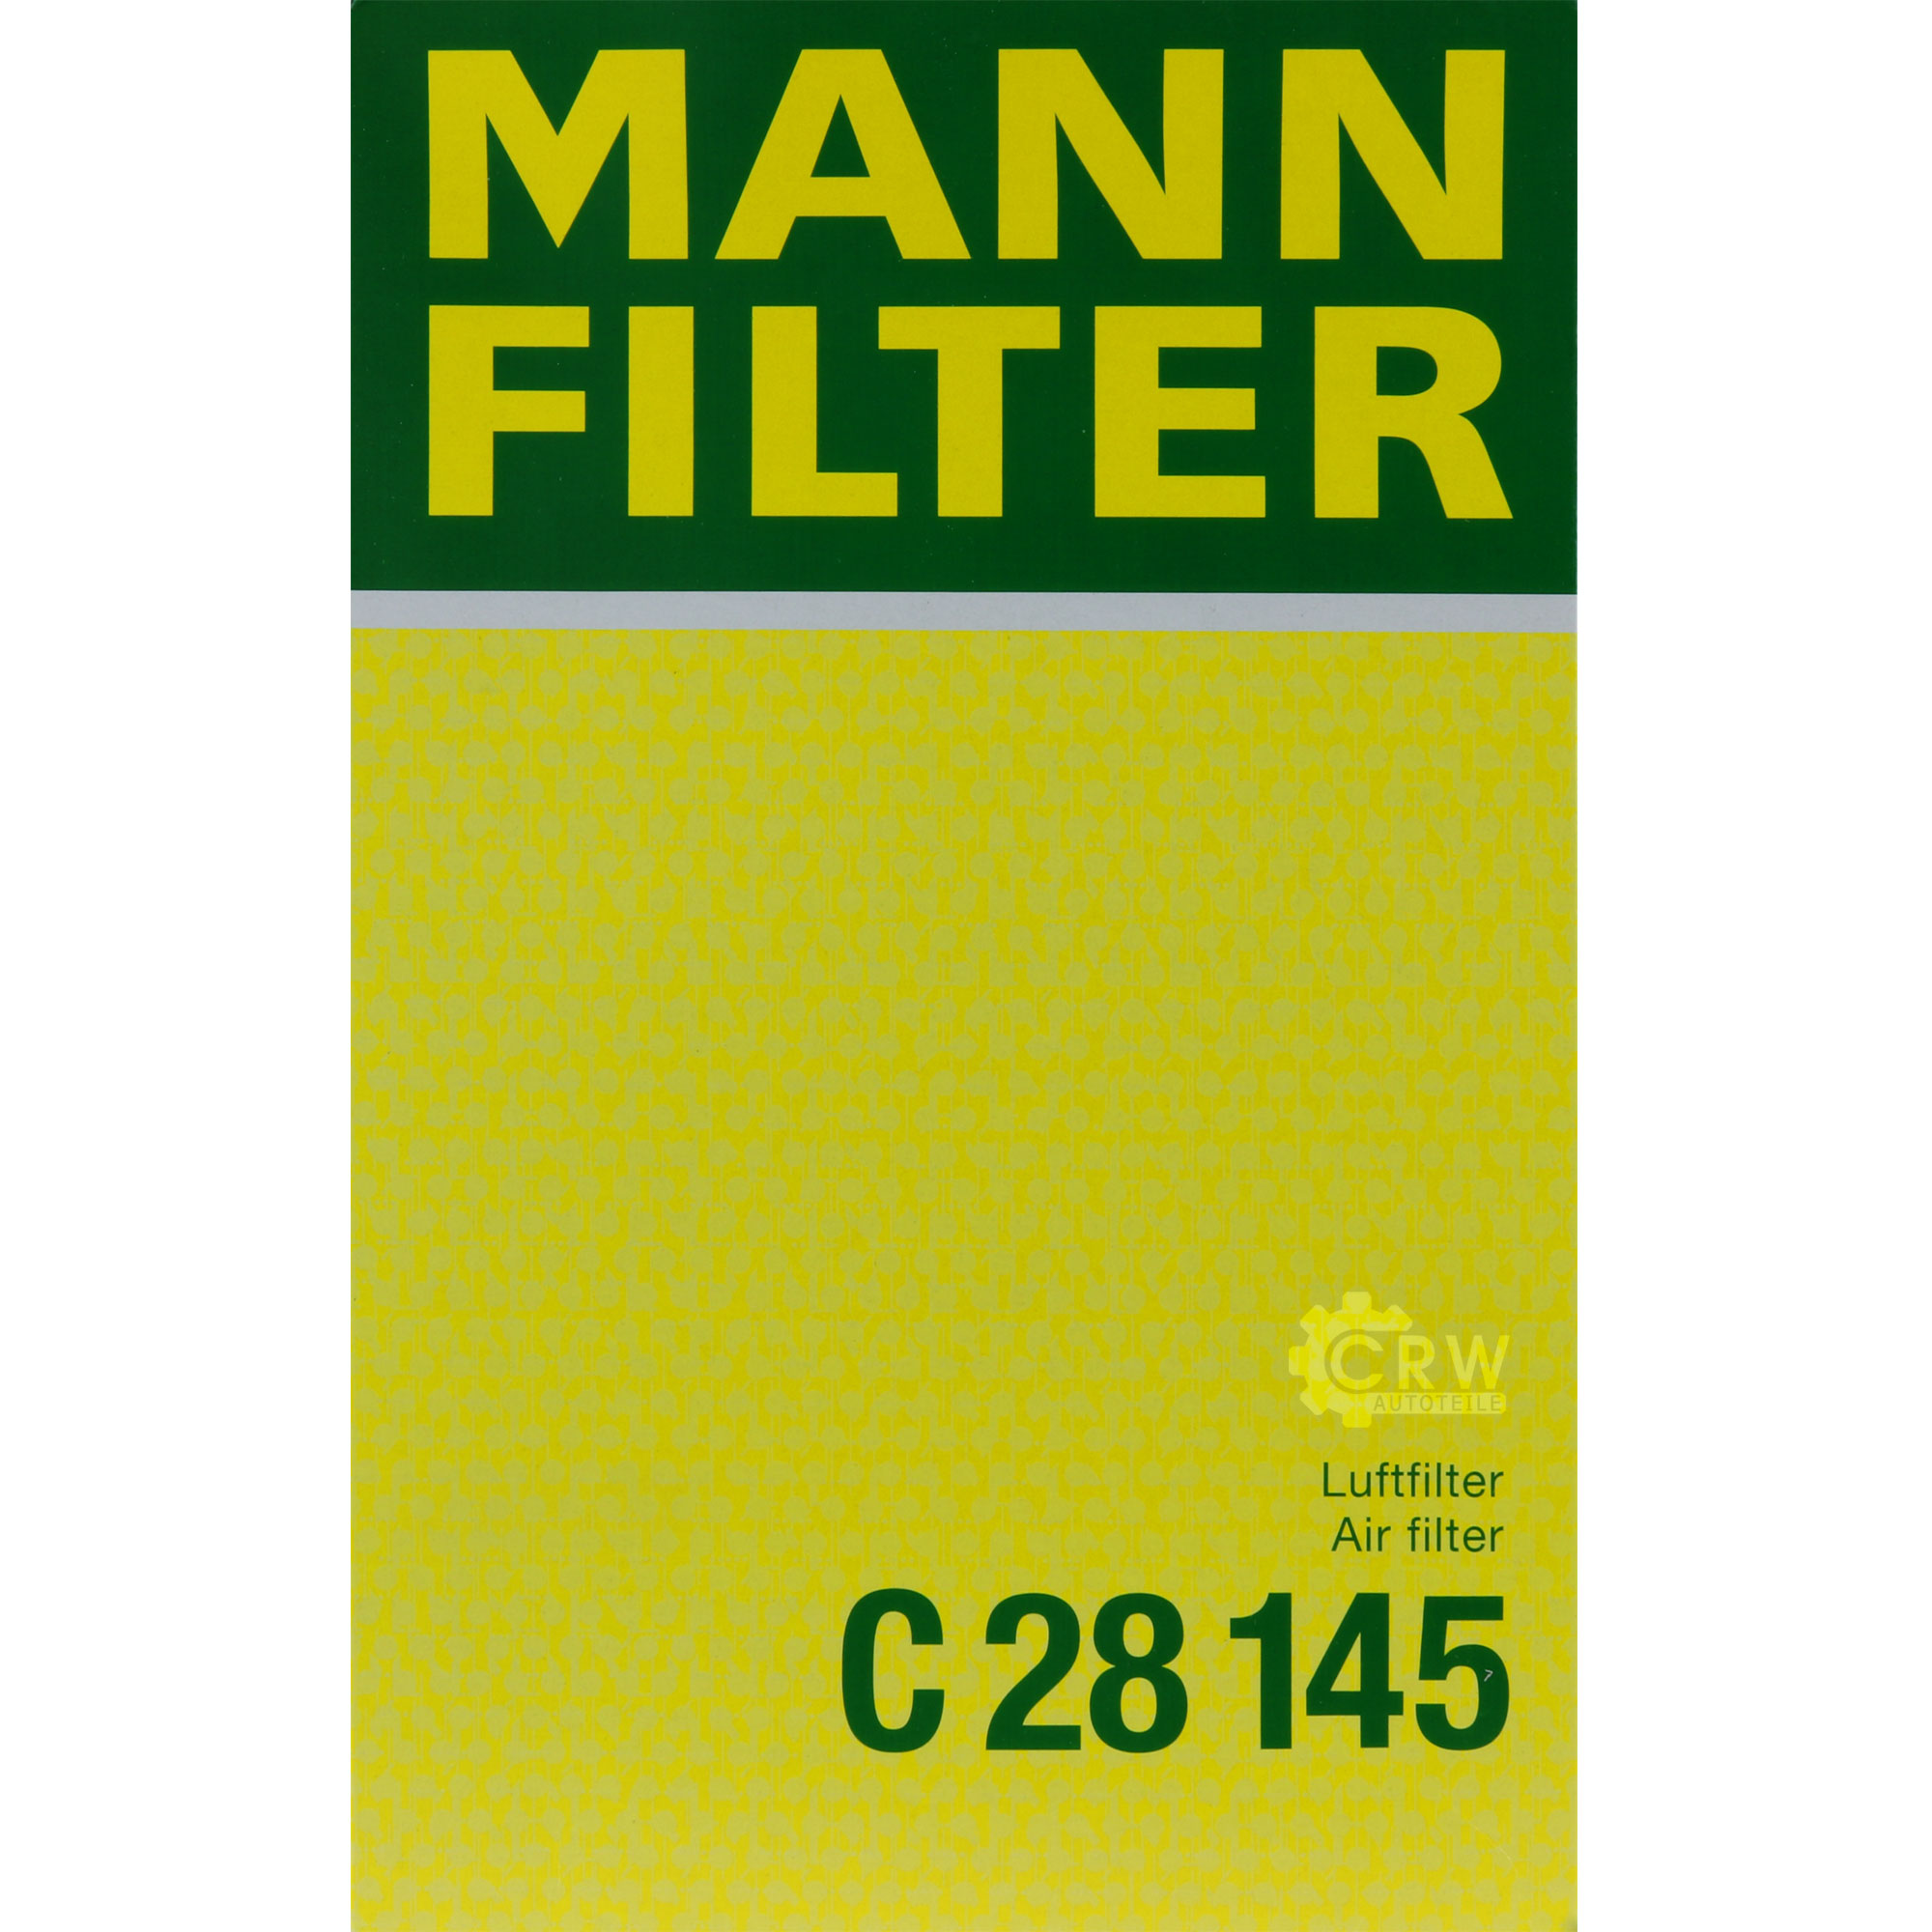 MANN-FILTER Luftfilter für Nissan NP300 Navara Pritsche/Fahrgestell D40 2.5 dCi